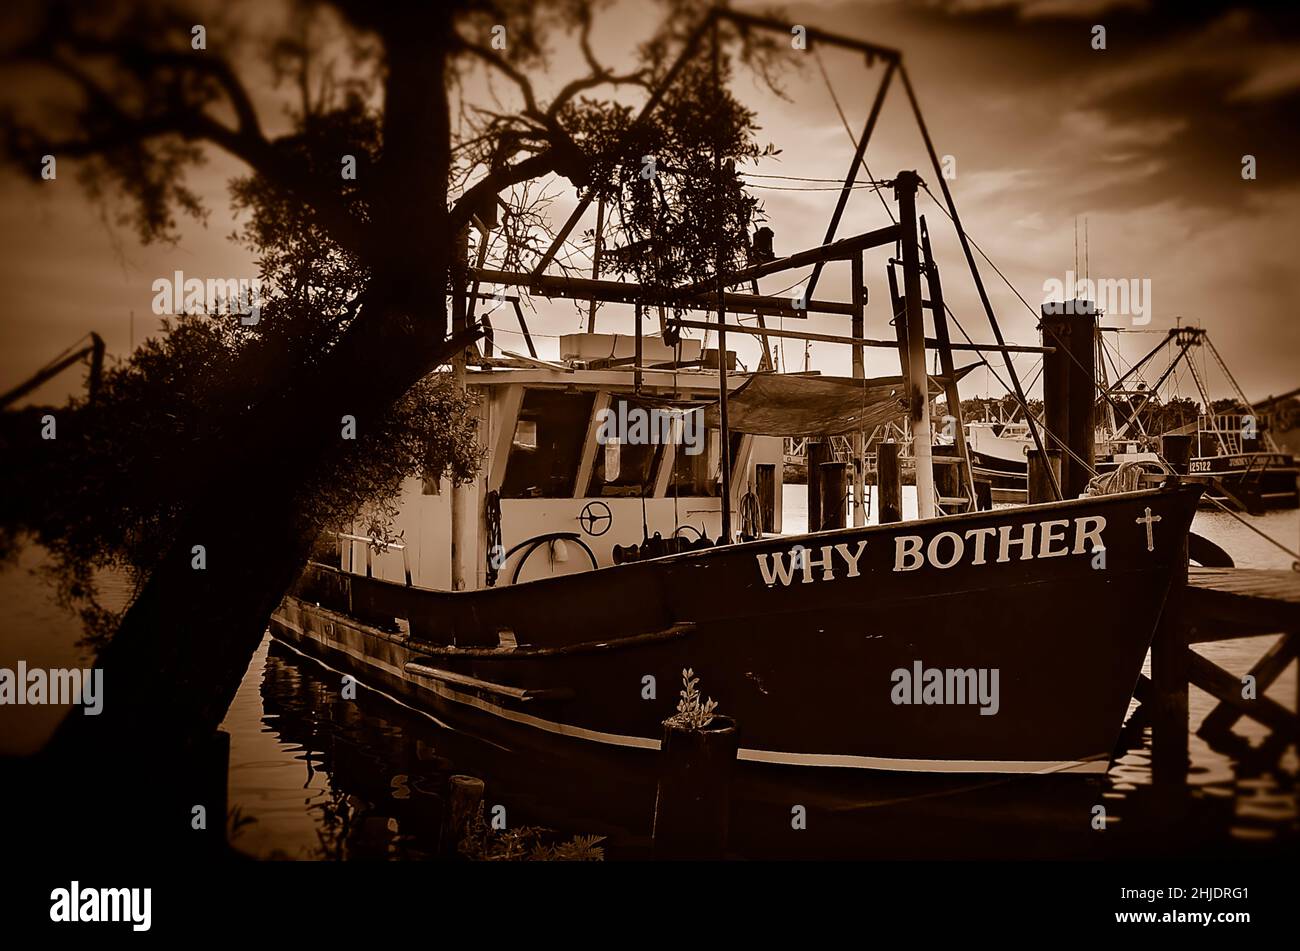 Un bateau à crevettes est photographié, le 9 mai 2015, à Bayou la Batre, Alabama.La ville est connue sous le nom de la capitale des fruits de mer de l'Alabama. Banque D'Images